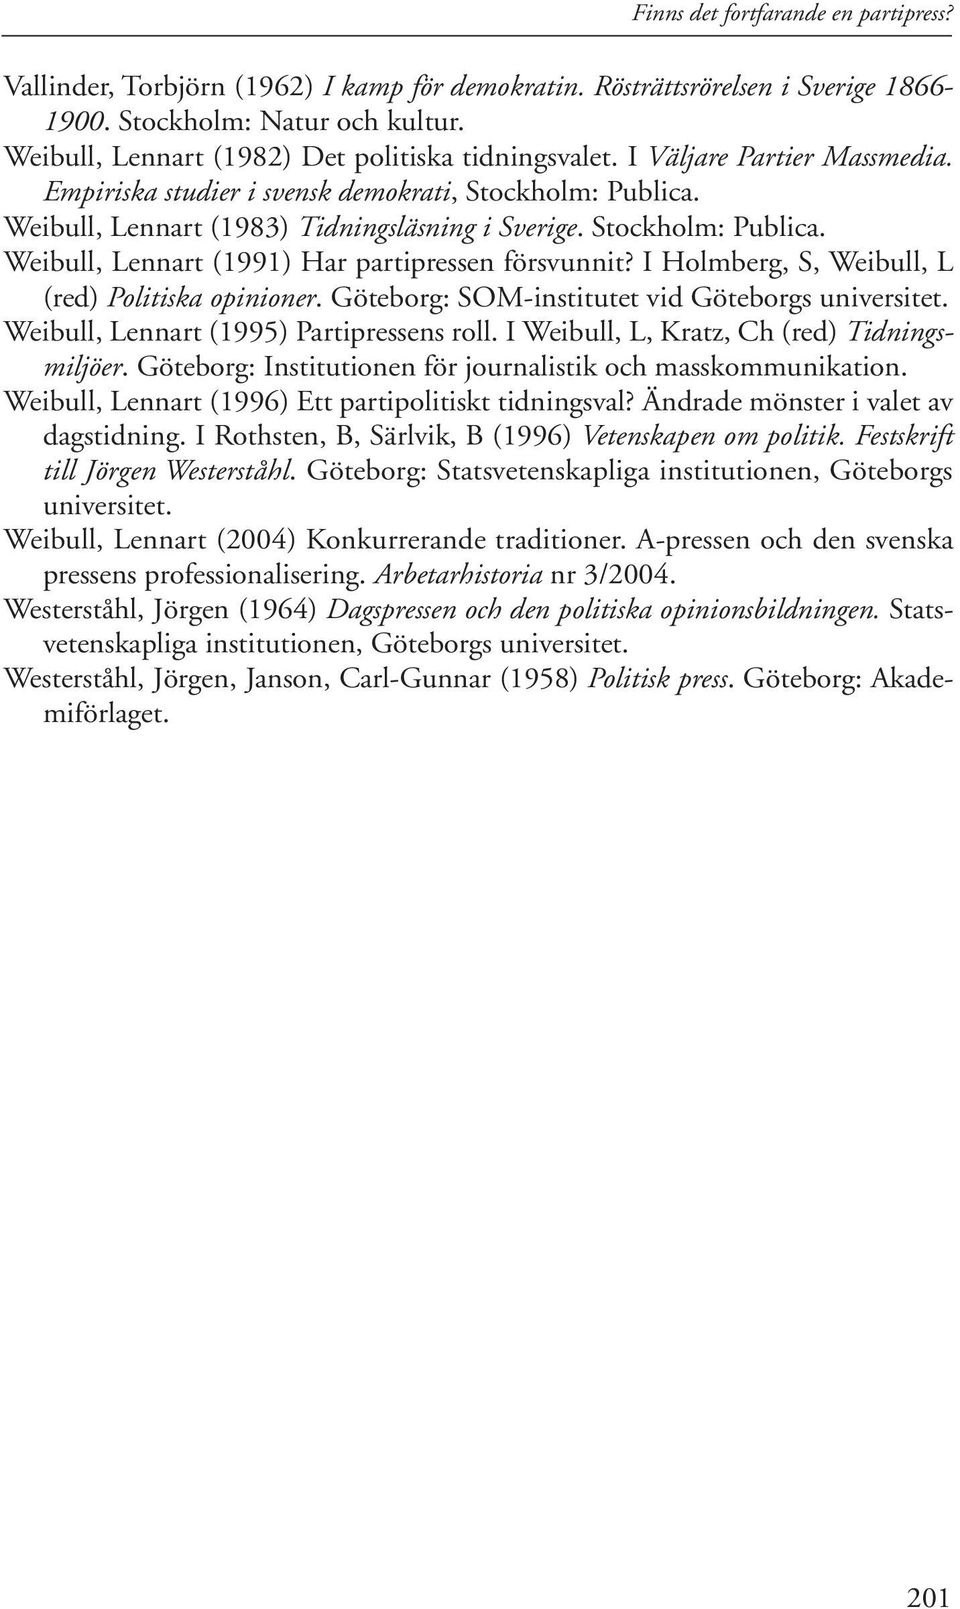 Stockholm: Publica. Weibull, Lennart (1991) Har partipressen försvunnit? I Holmberg, S, Weibull, L (red) Politiska opinioner. Göteborg: SOM-institutet vid Göteborgs universitet.